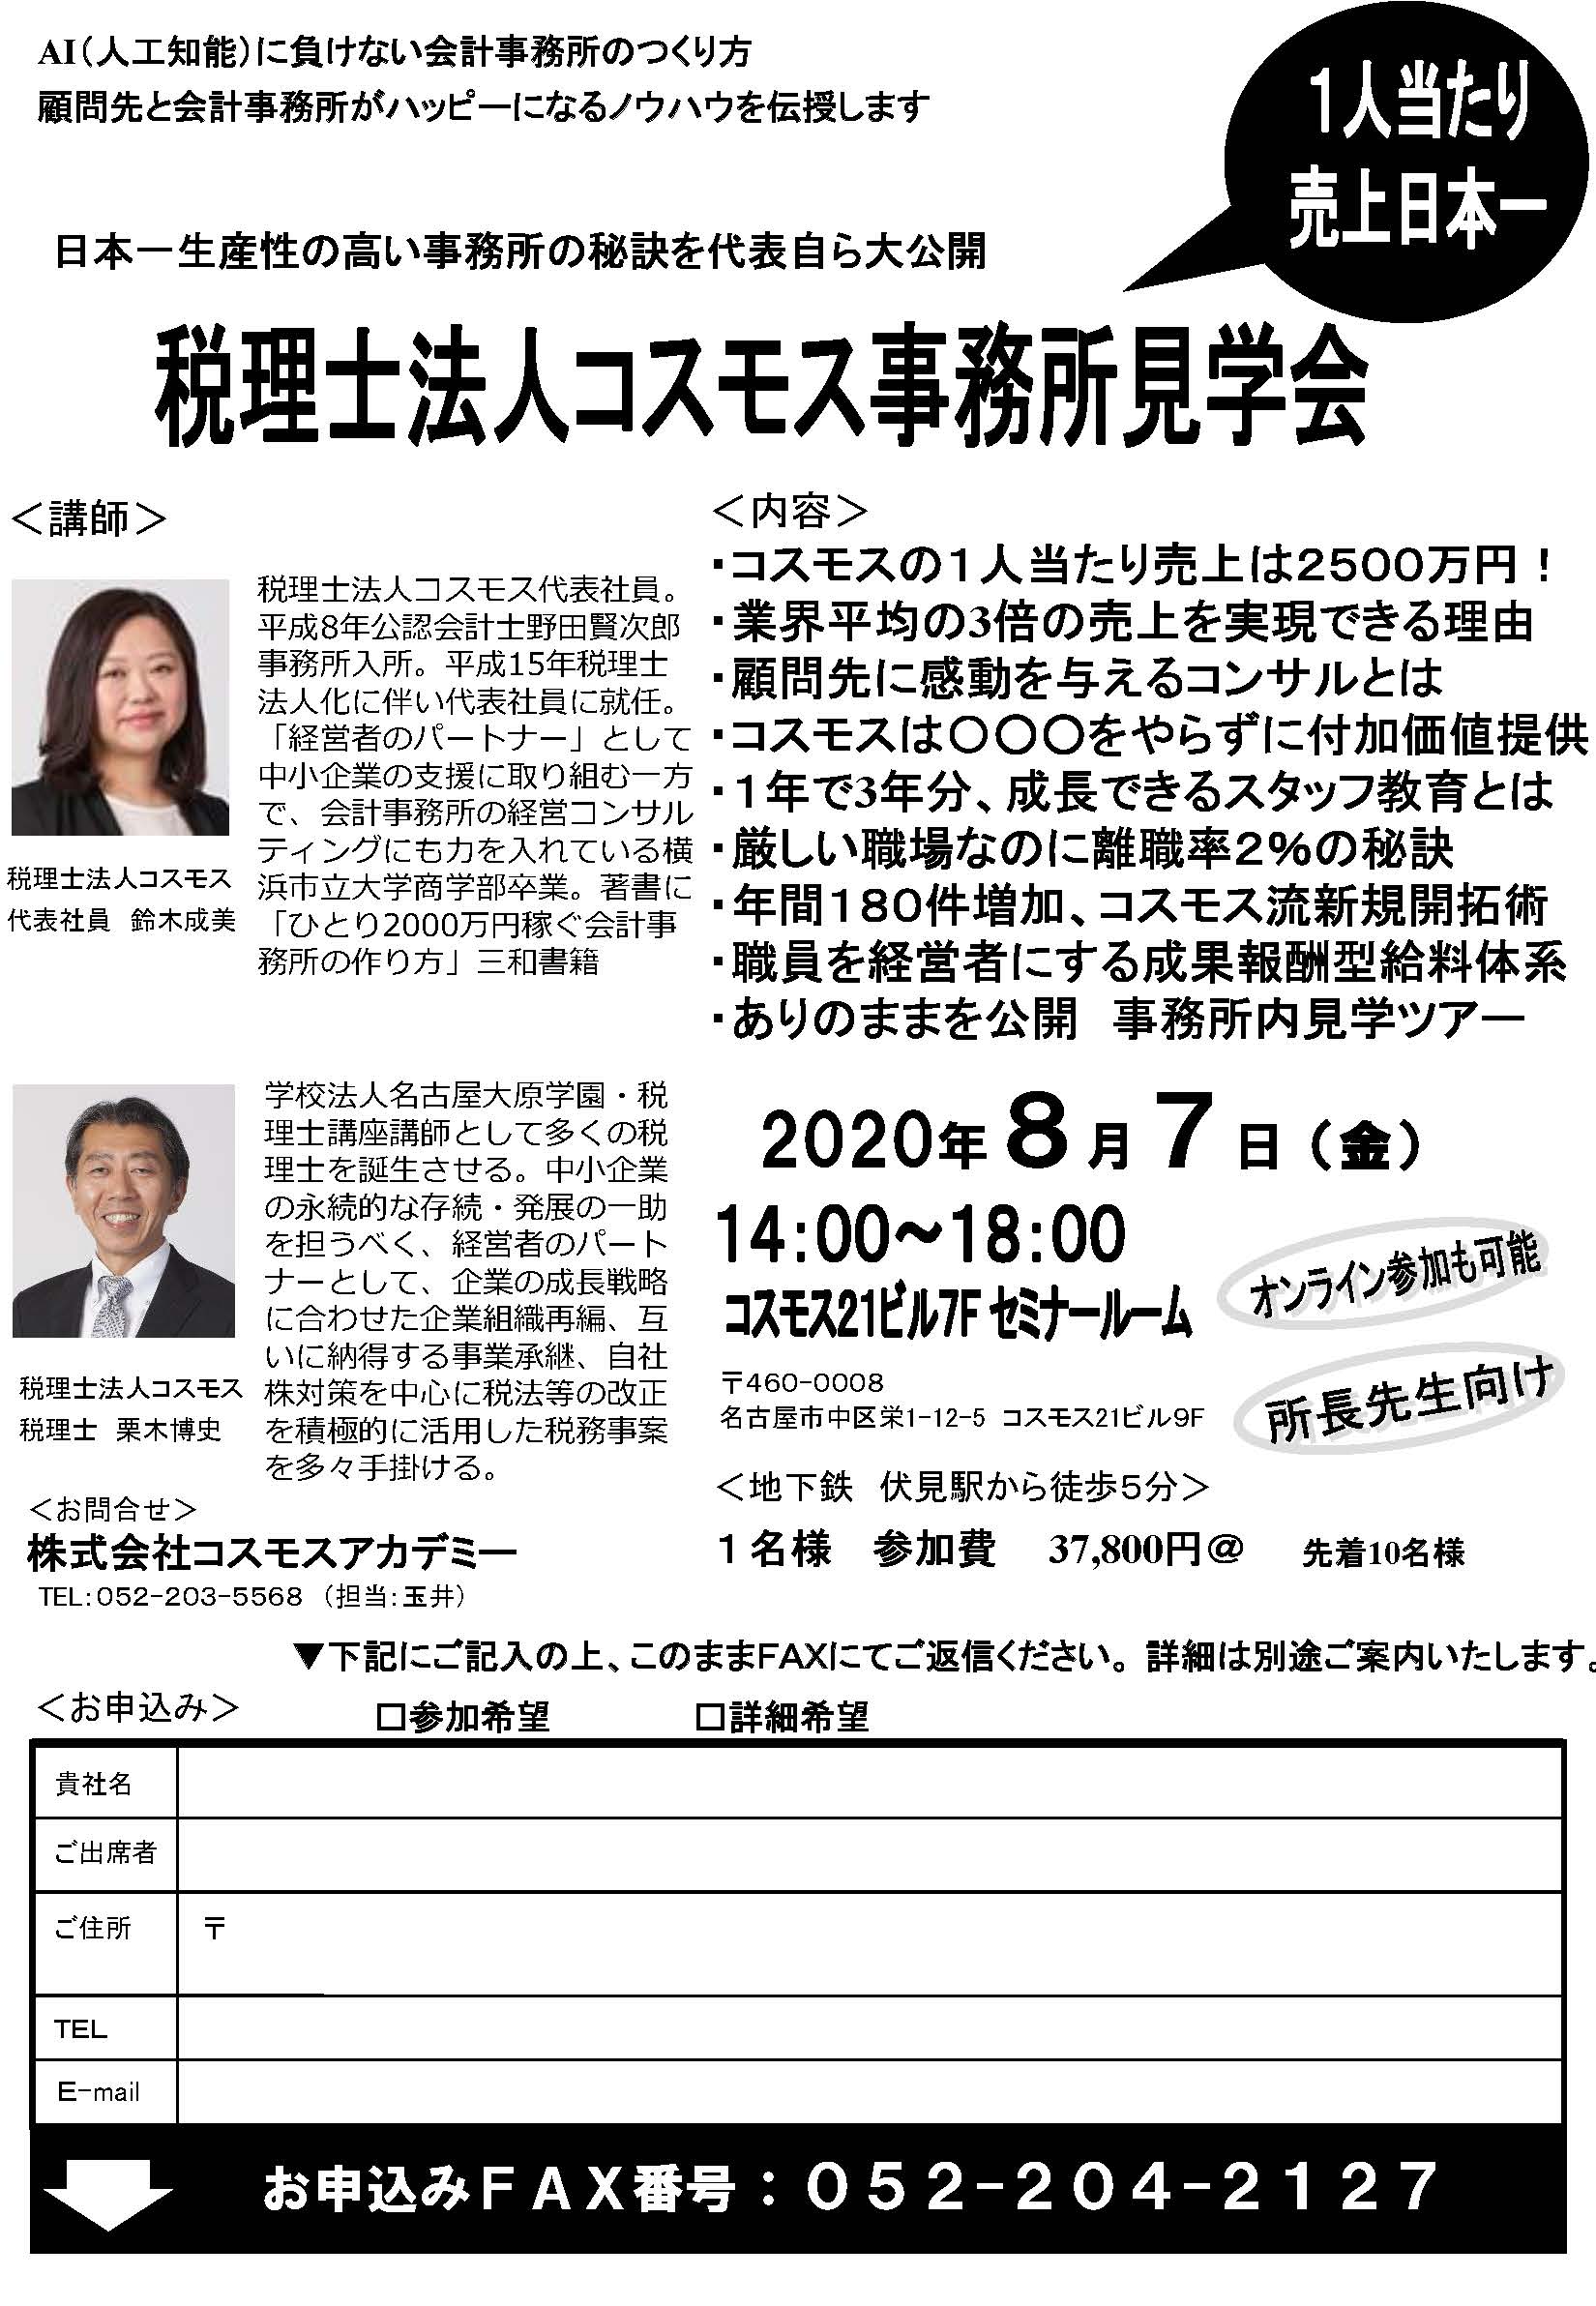 日本一生産性の高い事務所の秘訣を代表自ら大公開 | 税理士法人コスモス